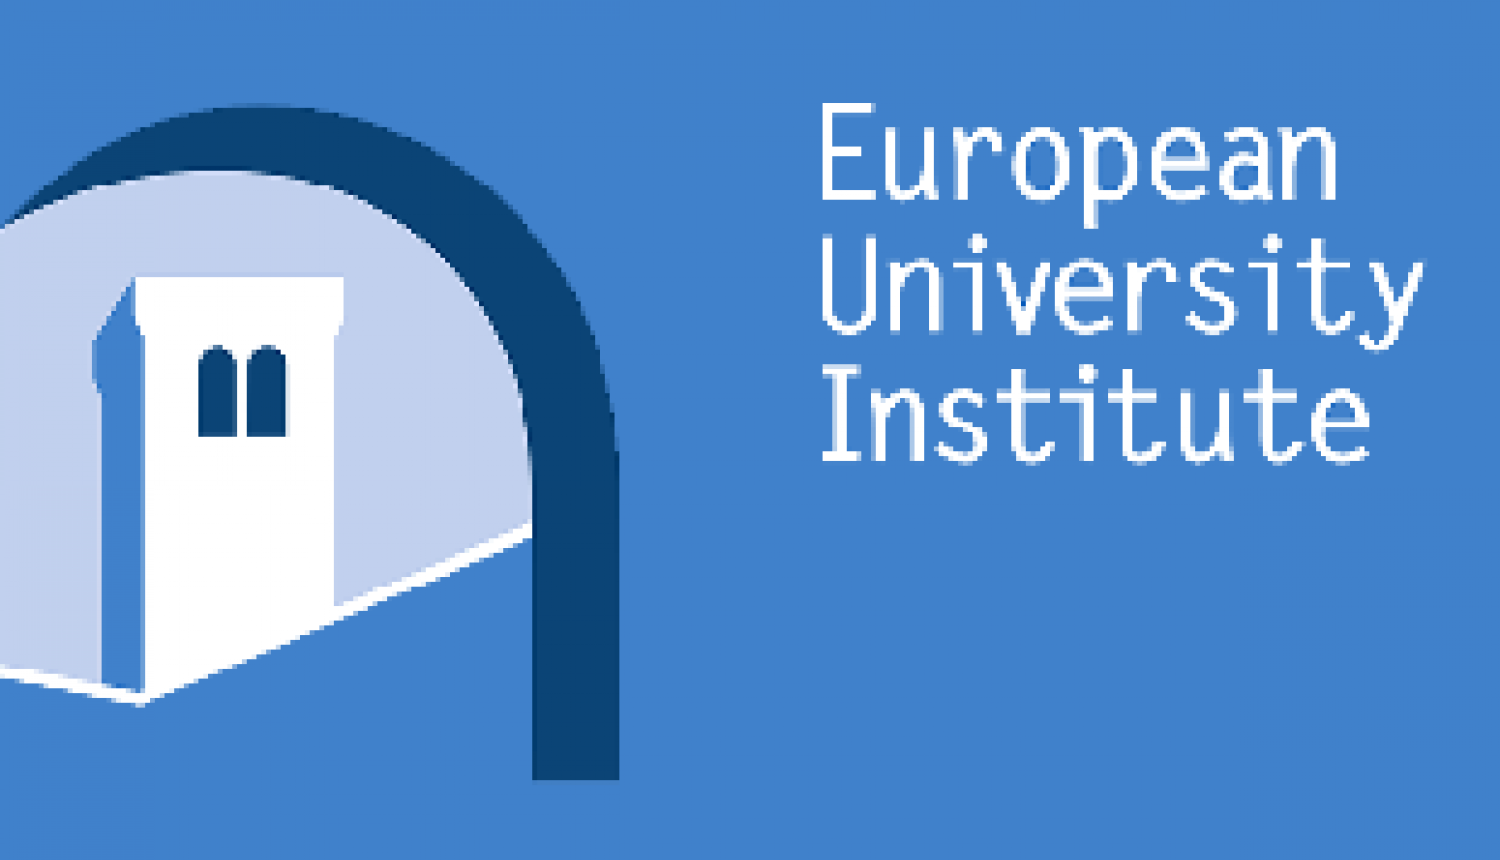 Iespēja pieteikties doktorantūras stipendijām studijām Eiropas Universitātes institūtā